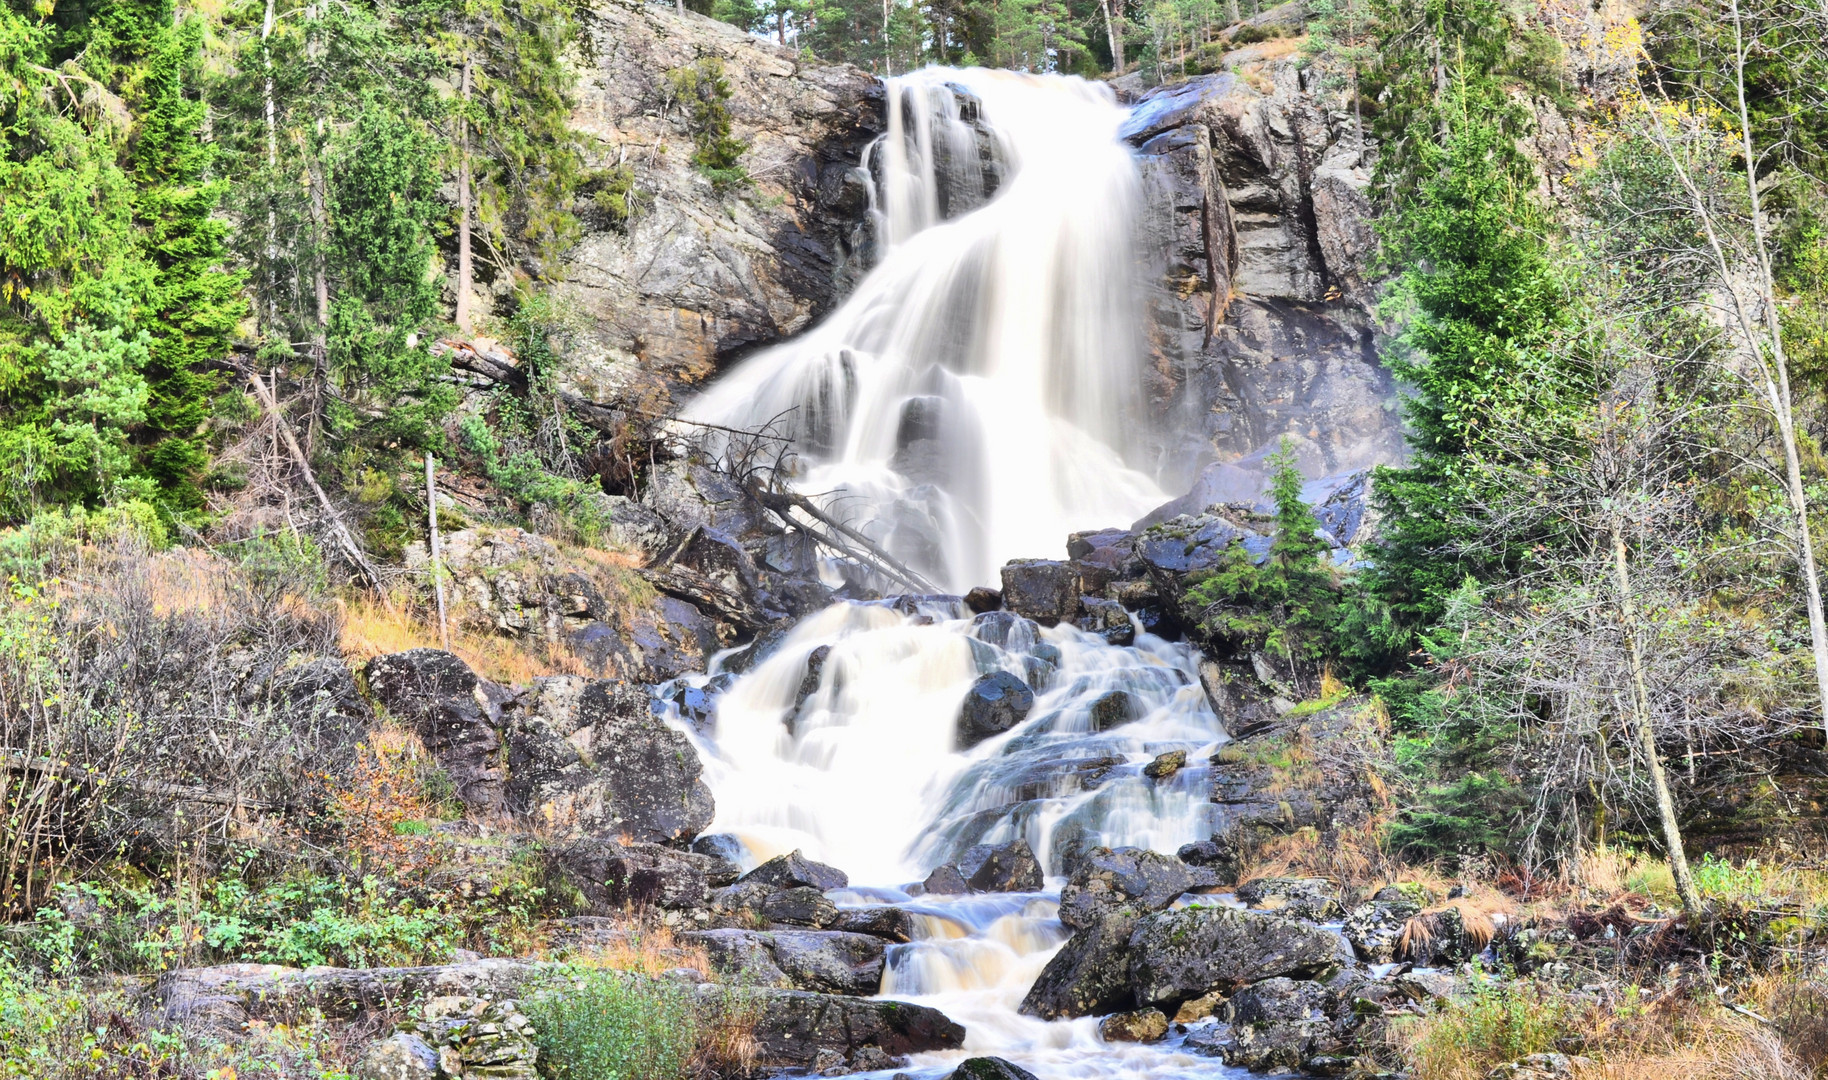 Waterfall in Halden, Norway